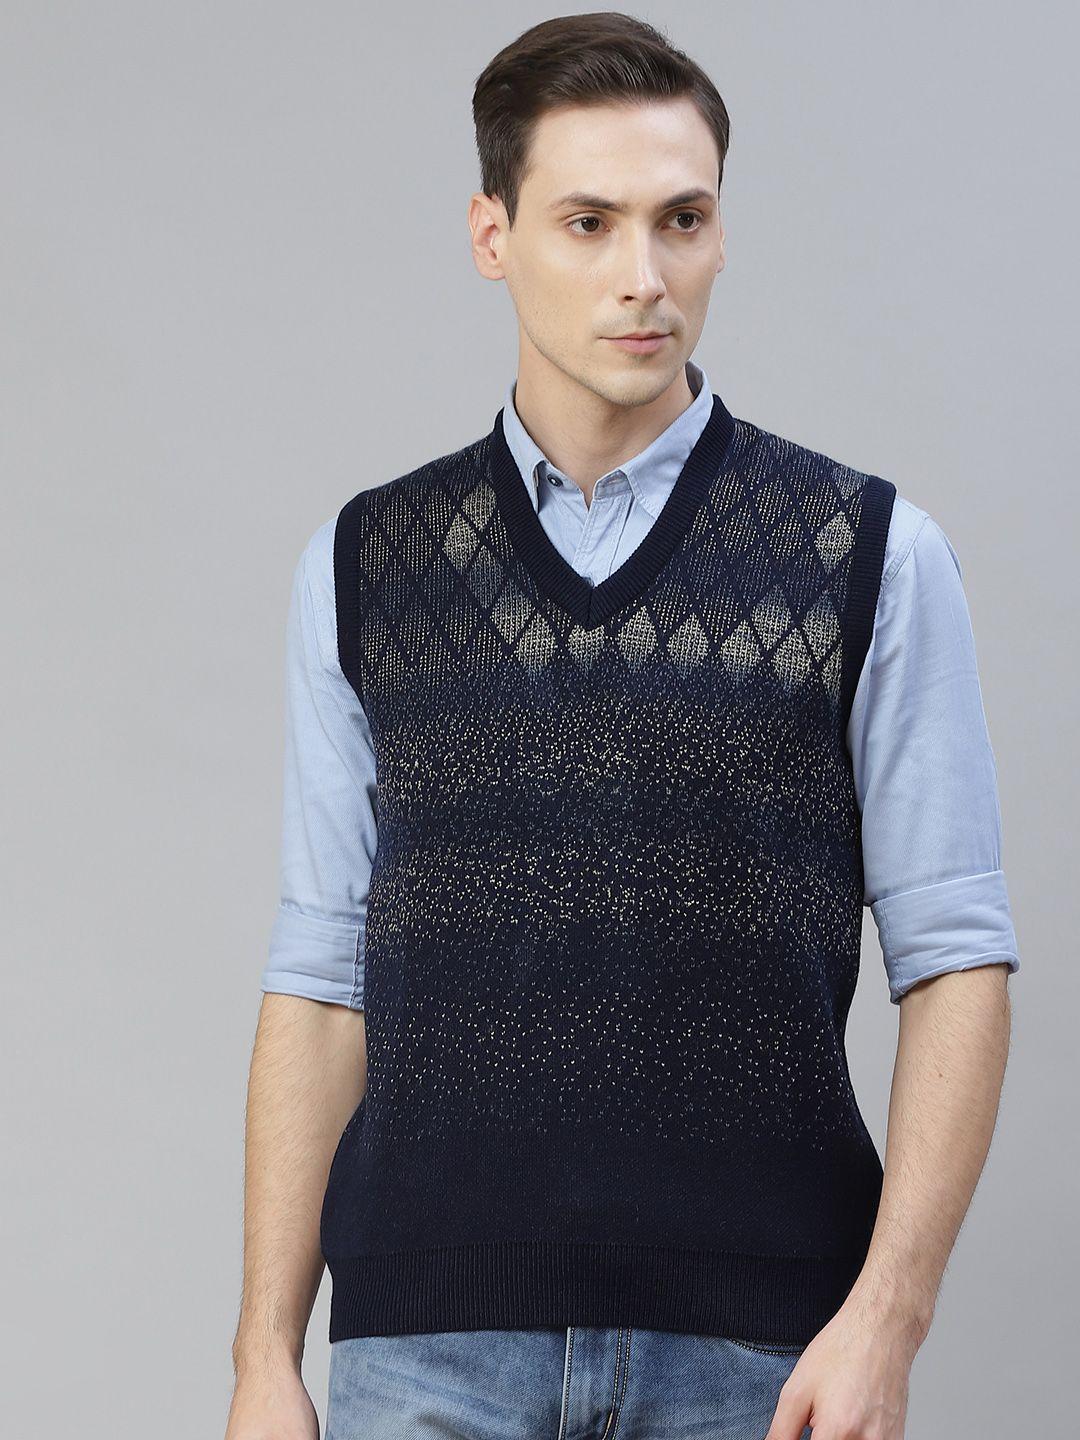 pierre carlo men navy blue & beige geometric design sweater vest